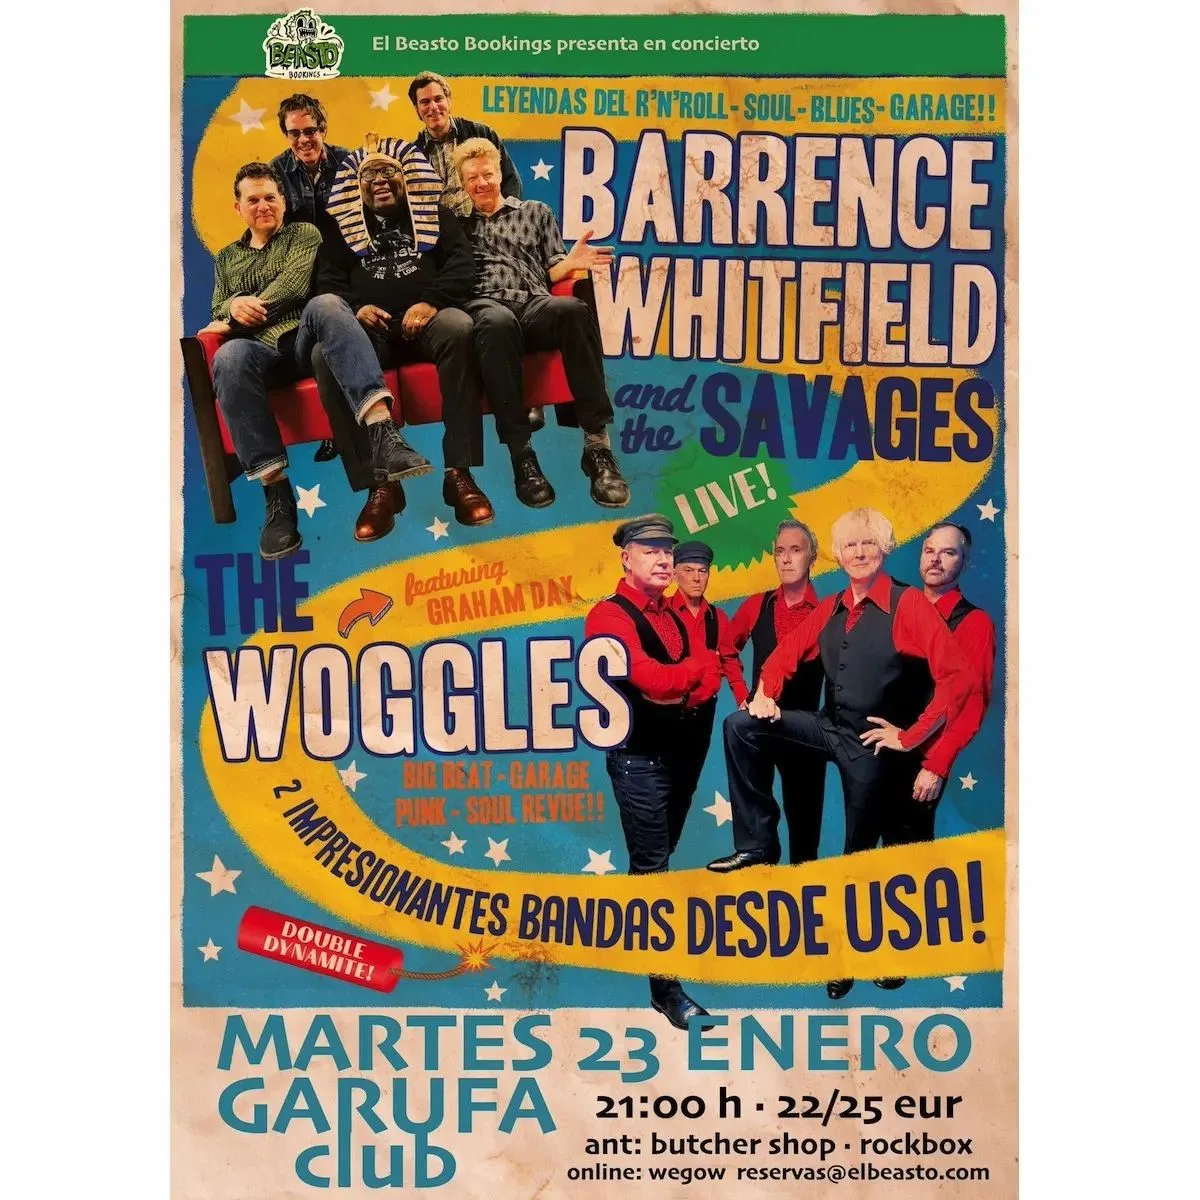 El Beasto organiza concierto de Barrence Whitfield and the Savages y The Woggles en el Garufa